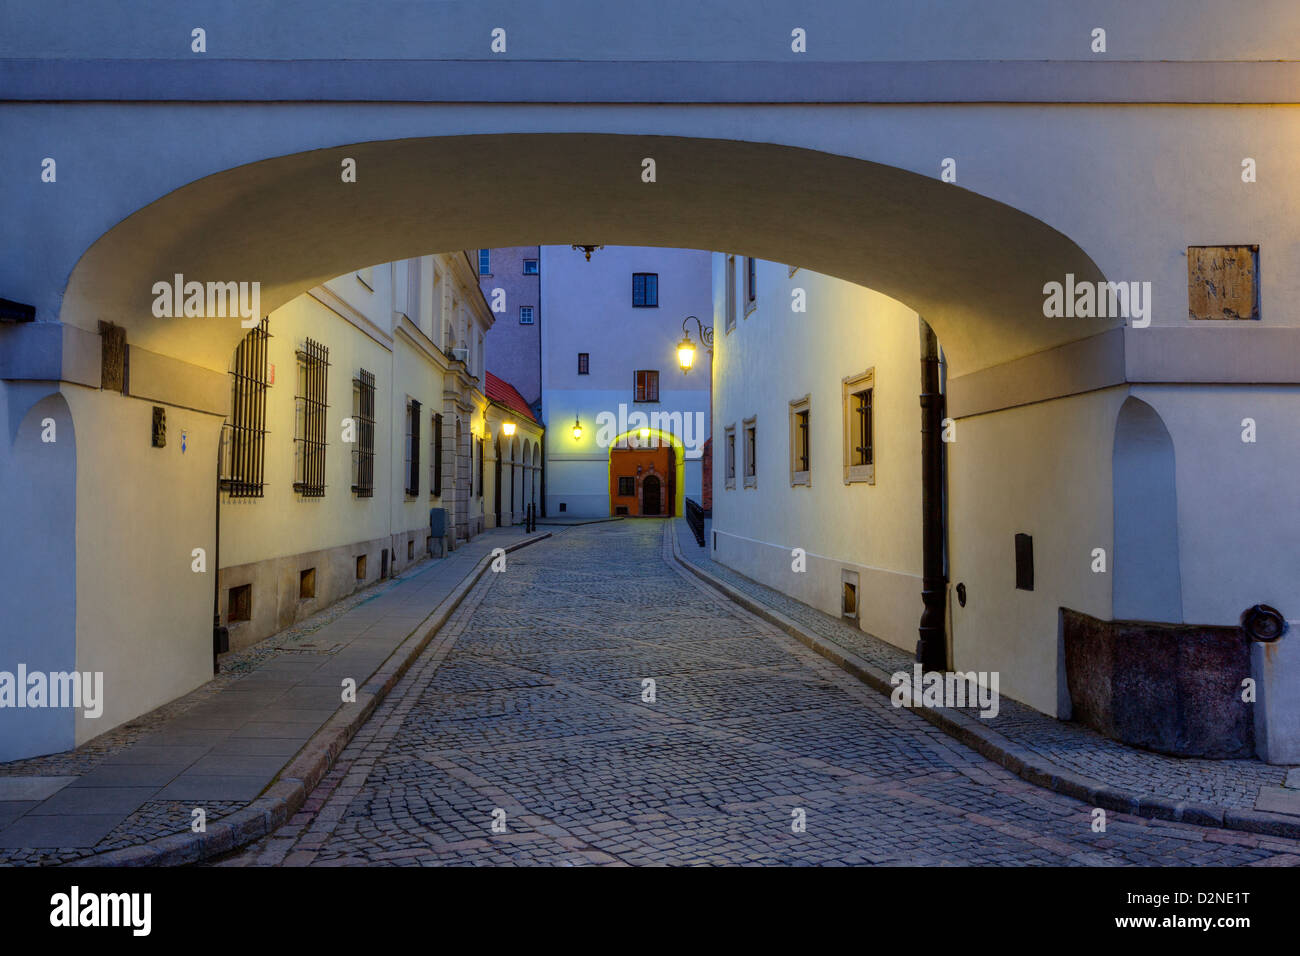 Old Town, Dziekaniastreet, Warsaw,Poland Stock Photo